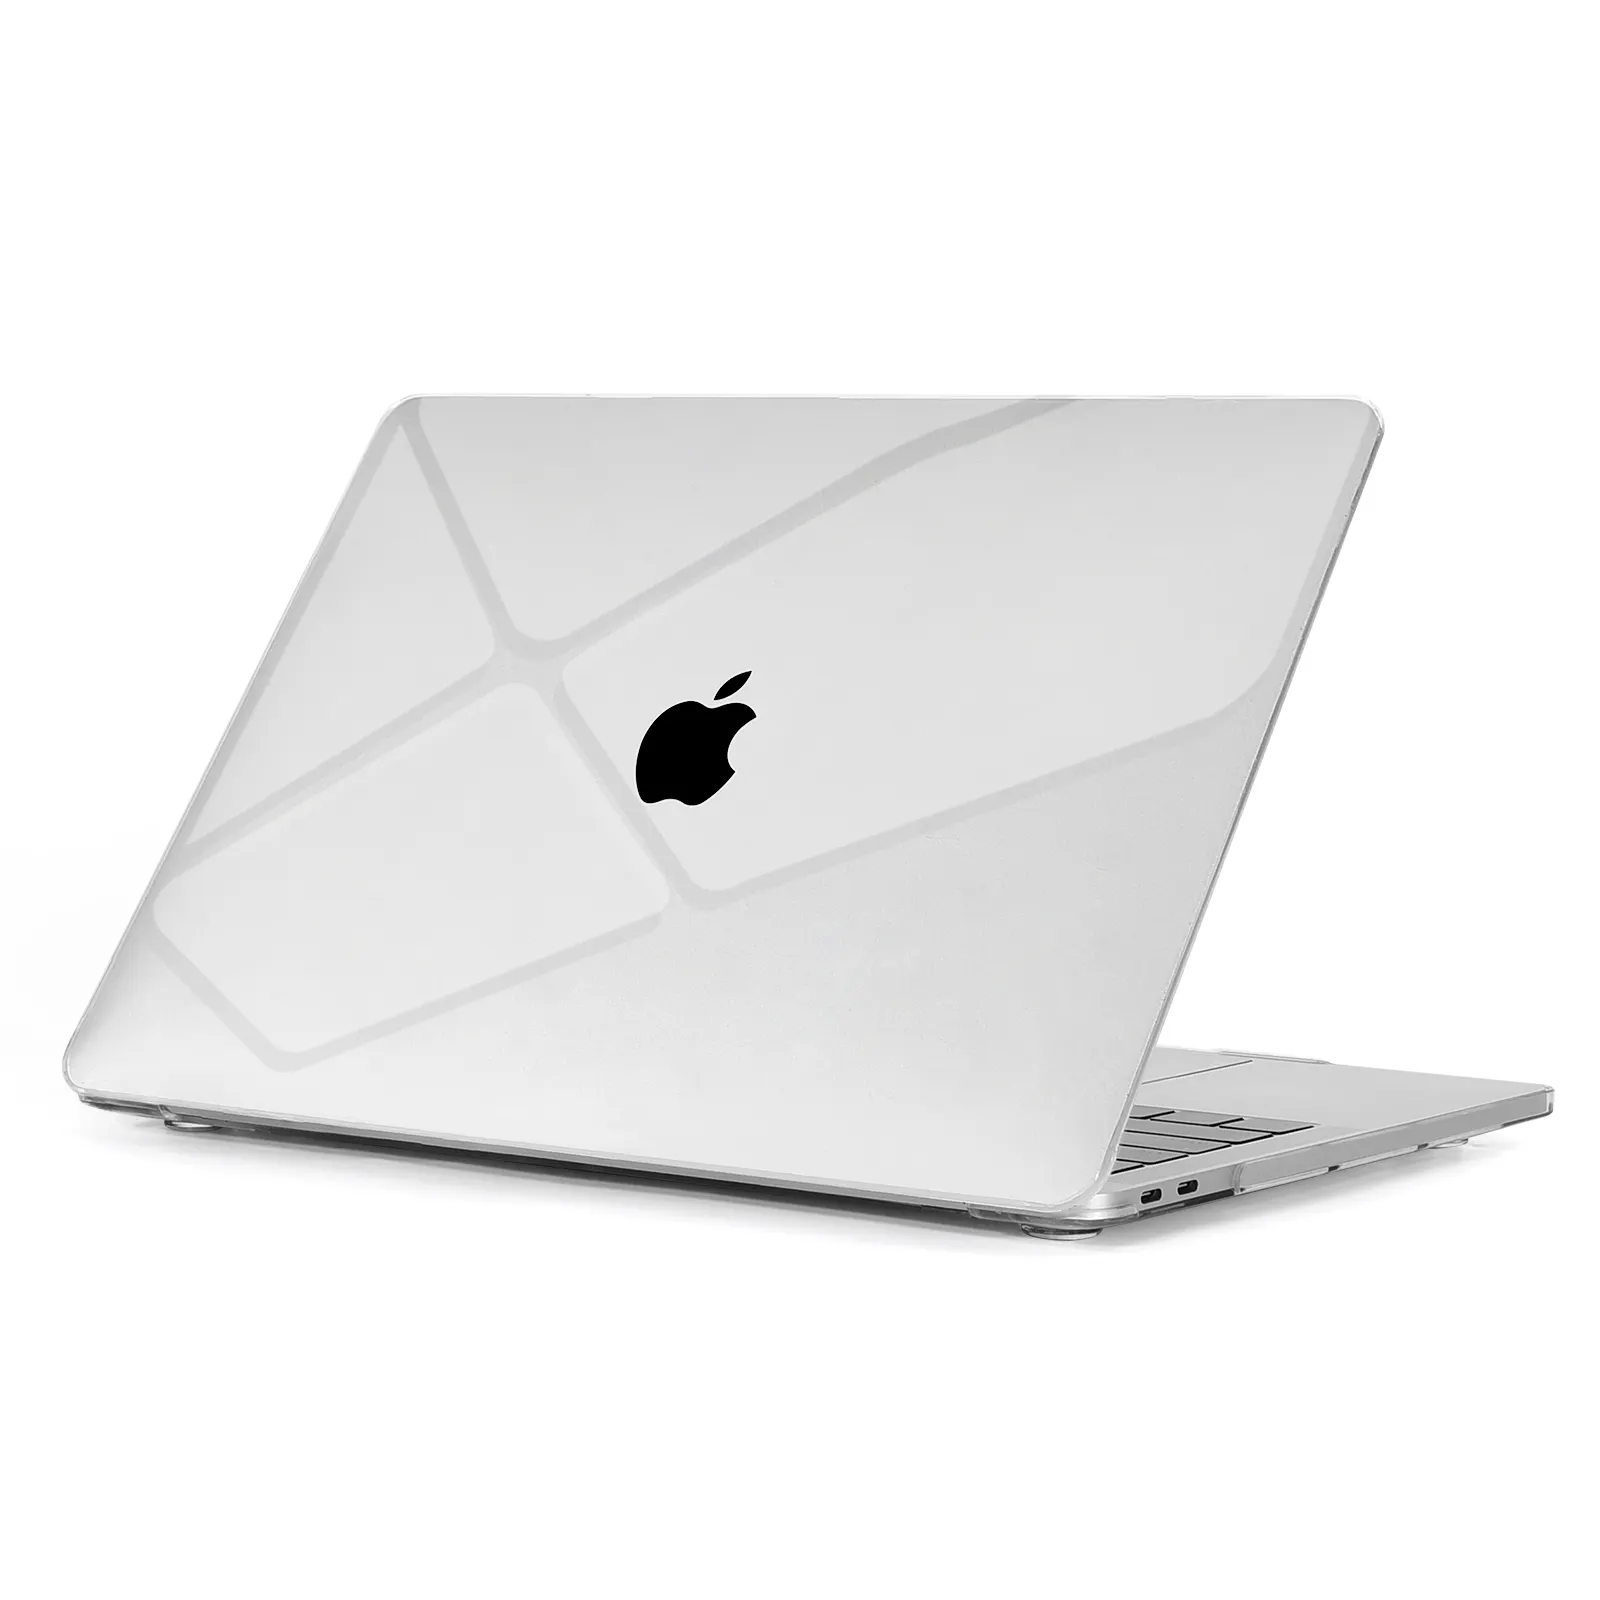 Кристалл мягкий чехол для ноутбука Apple Macbook Air M2 чехол для ноутбука Macbook Pro 13 дюймов прозрачная модель A2337